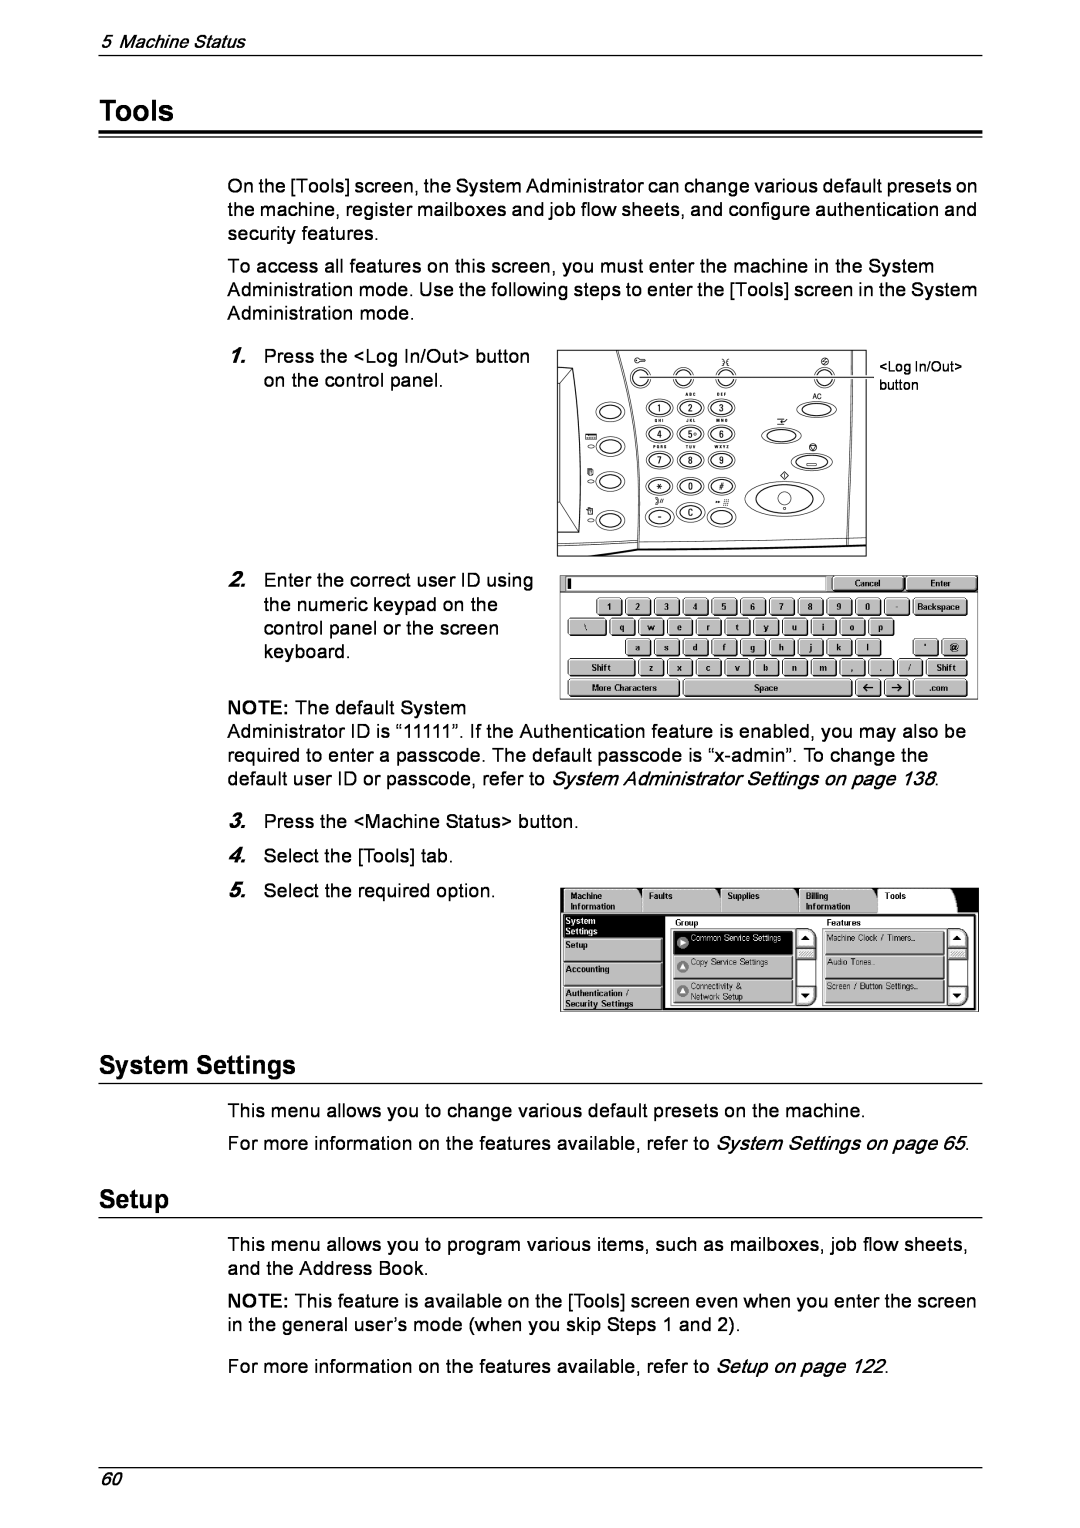 Xerox 5222 manual Tools, System Settings, Setup 